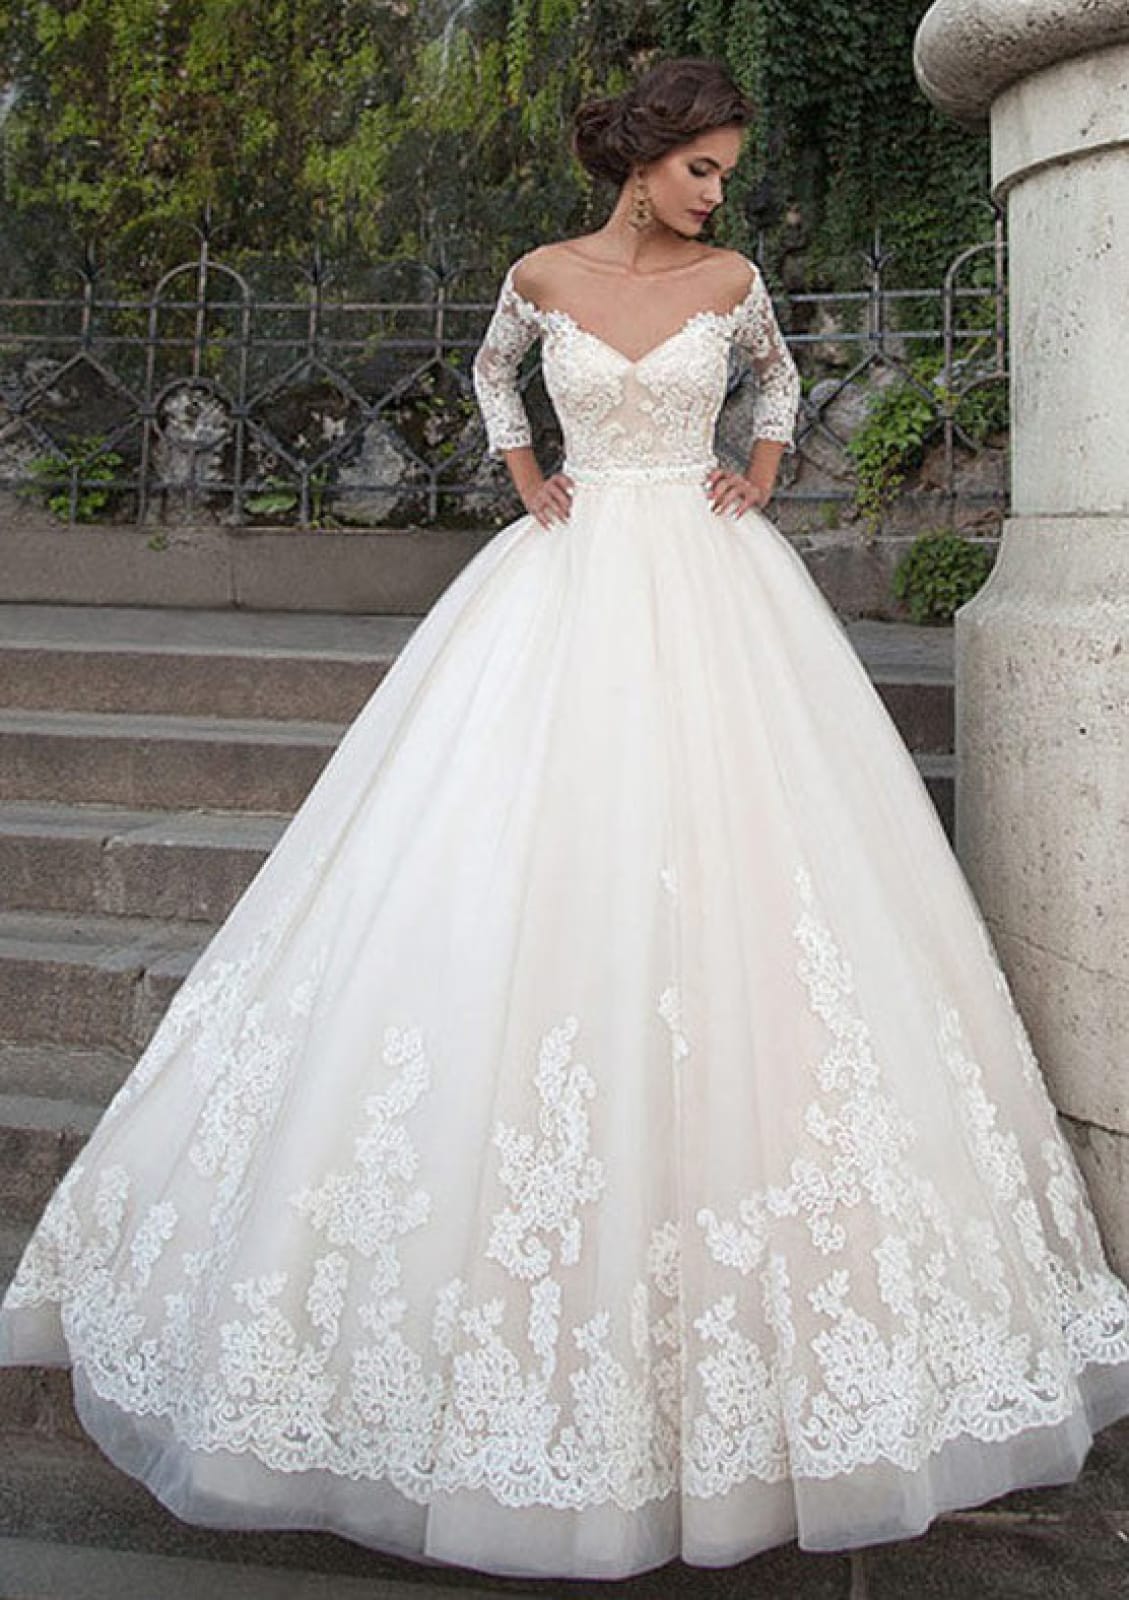 Wedding Dress Photos, Wedding Dresses Pictures - WeddingWire.com